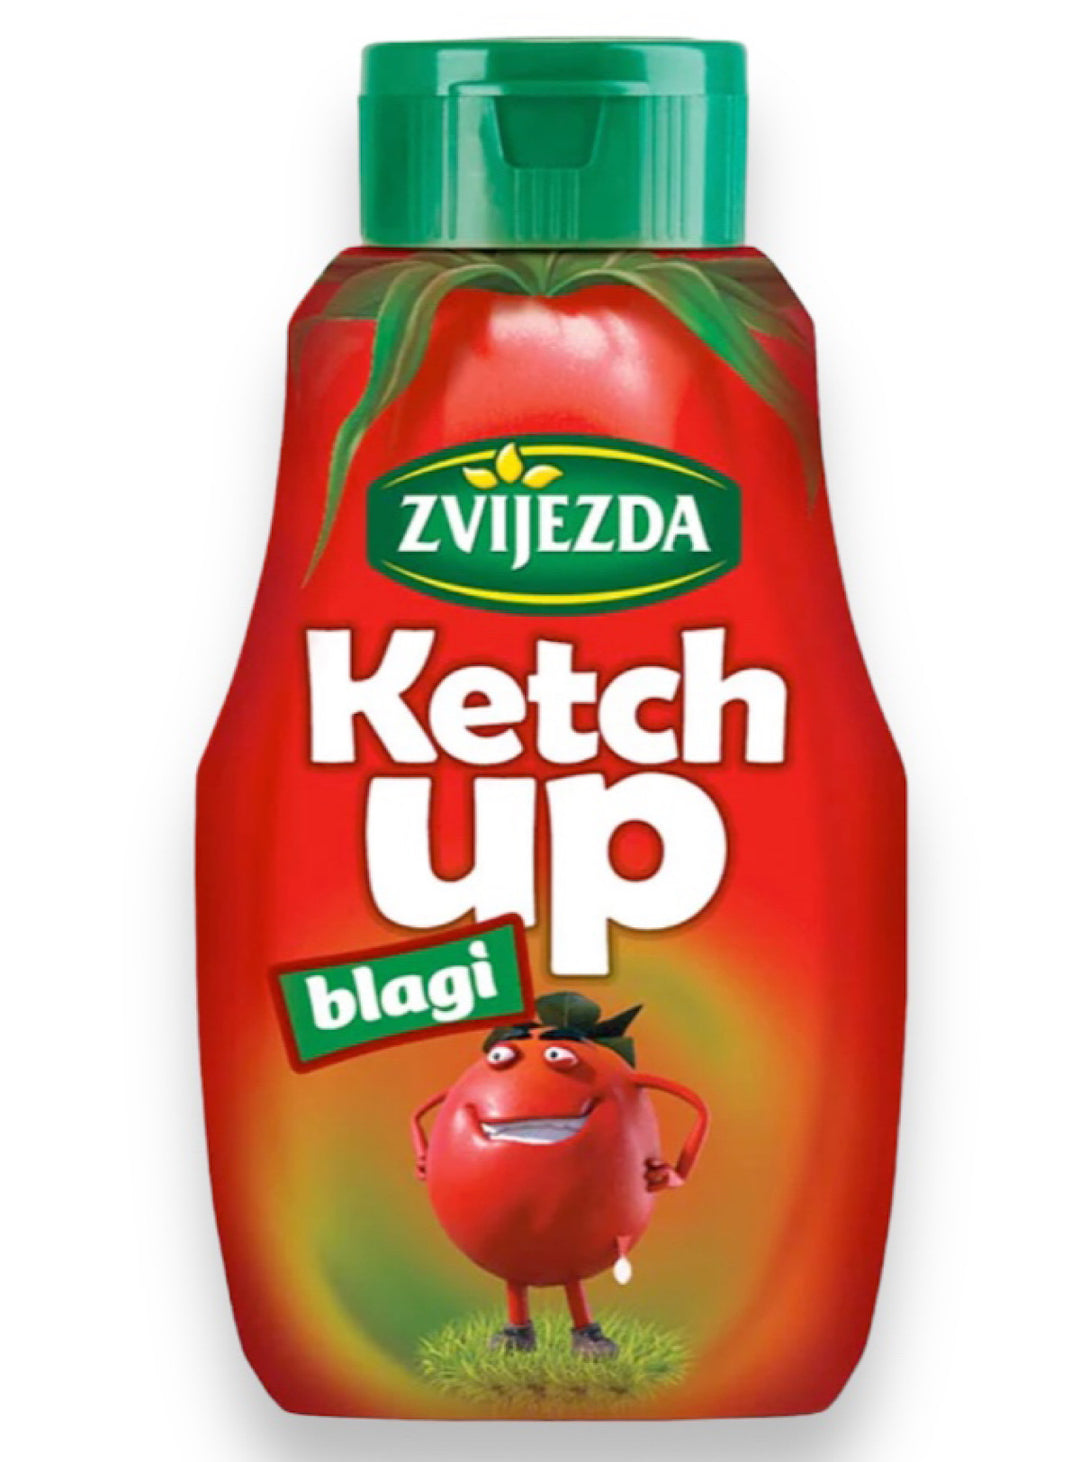 Ketchup - Zvijezda - 500g